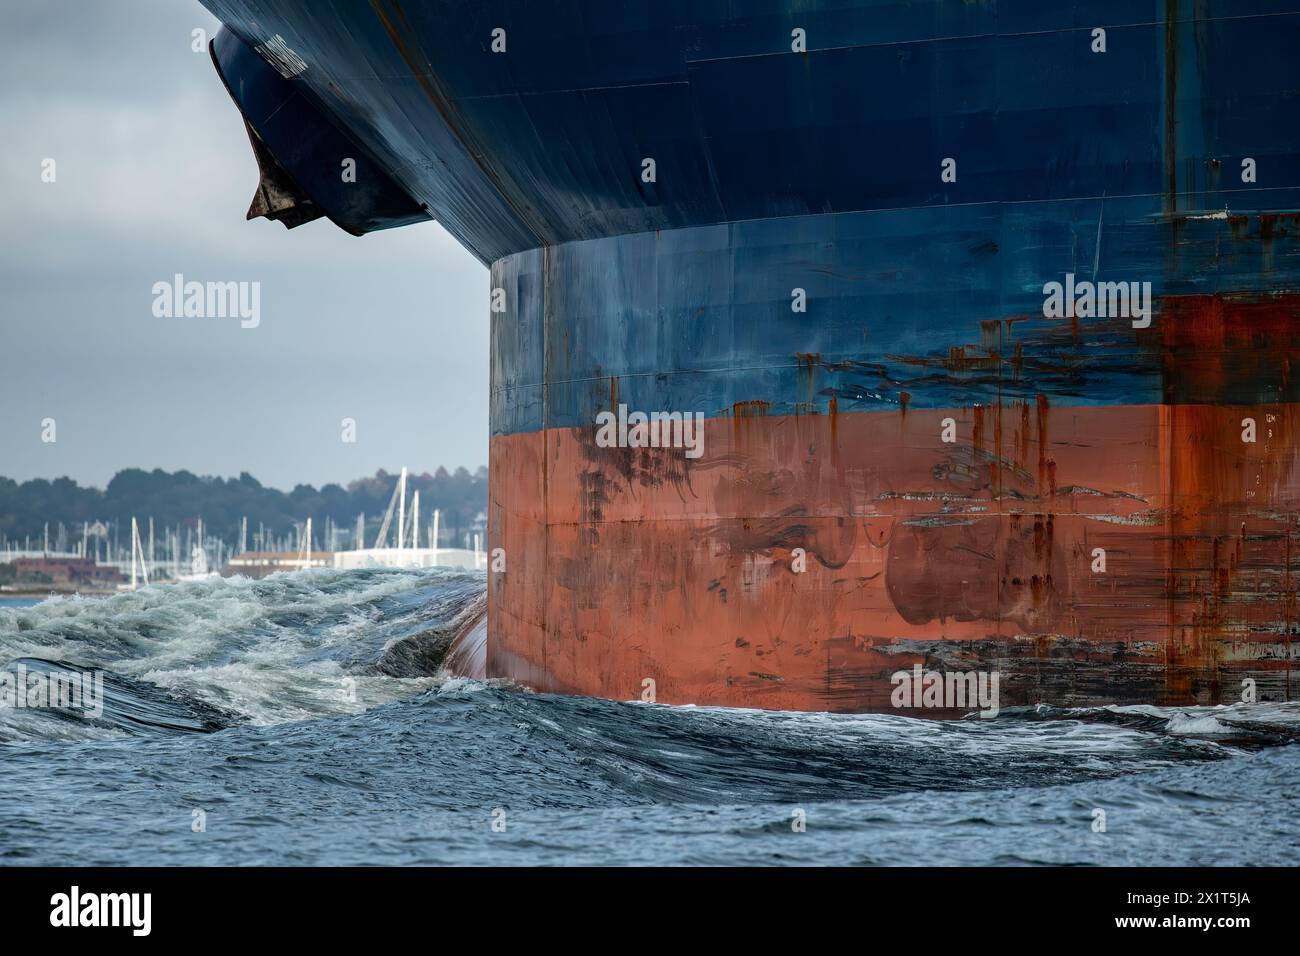 Les grands navires porte-conteneurs bleus avec des ancres rouillées poussent une vague d'arc géante à travers l'océan. Banque D'Images